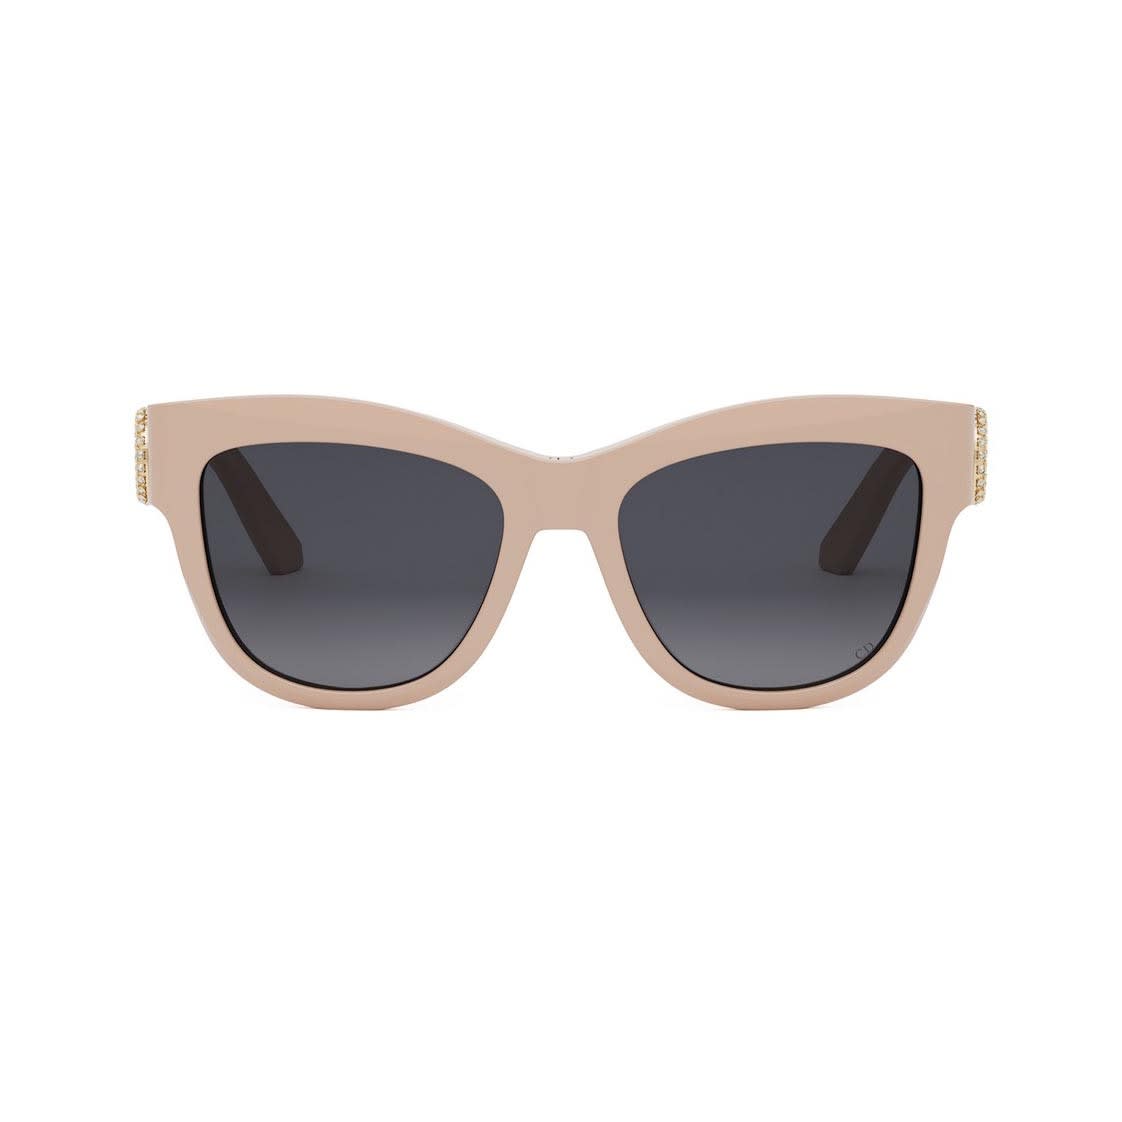 Dior Sunglasses In Neutral